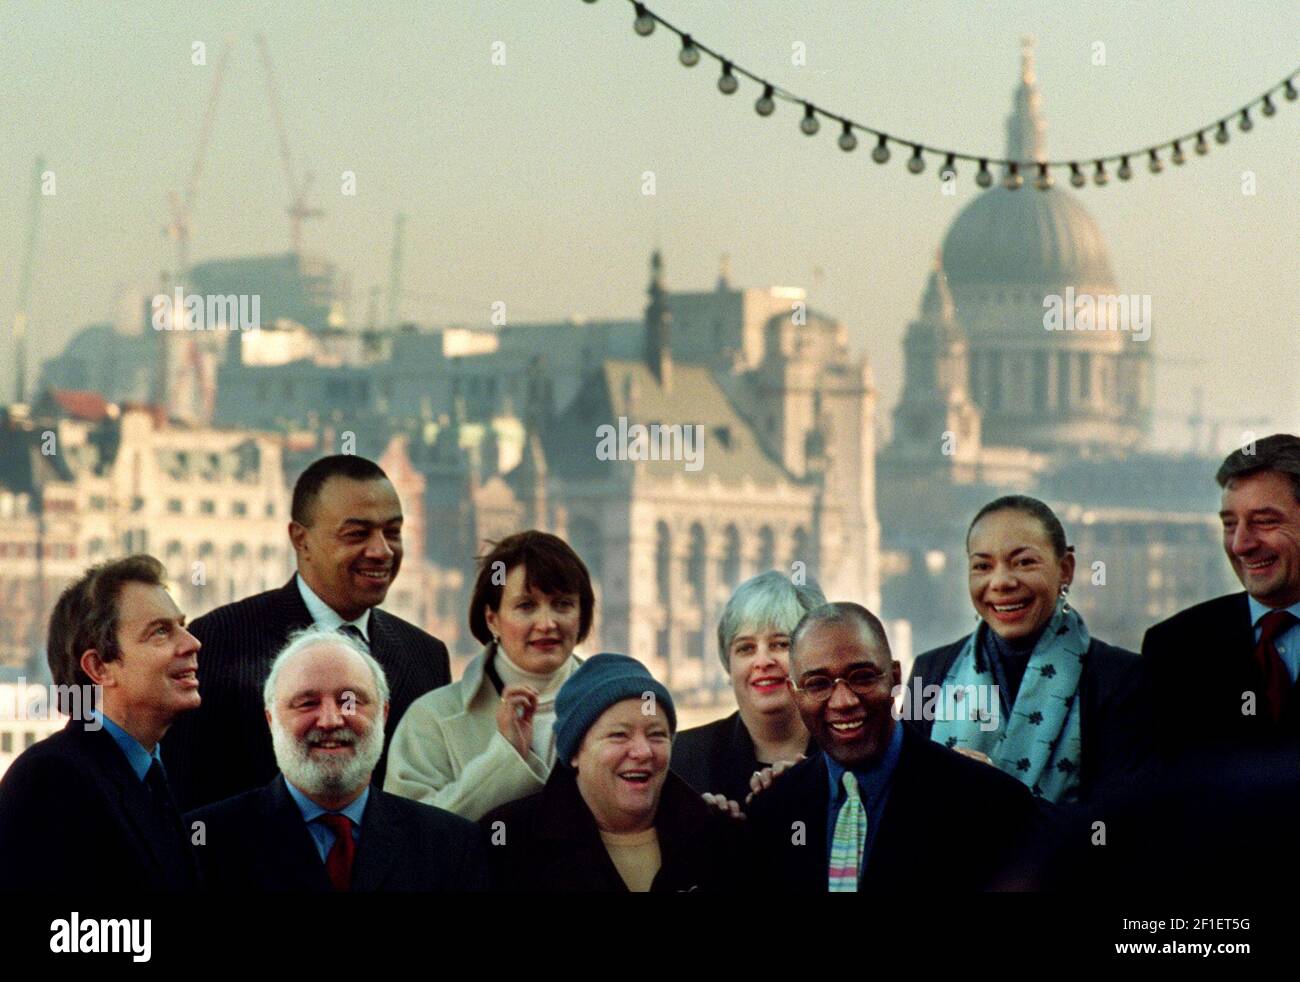 FRANK DOBSON UND SEINE UNTERSTÜTZER POSIEREN FÜR EINE FOTOZELLE AUF DER SOUTH BANK. 27/1/00. PILSTON.Frank Dobson mit seinen Unterstützern Januar 2000 einschließlich Tony Blair Mo Mowlam Trevor Philips versammeln sich auf der Southbank für eine Fotowand, um seine Kampagne zu fördern, die Labour-Partei Kandidat für London Bürgermeister Stockfoto